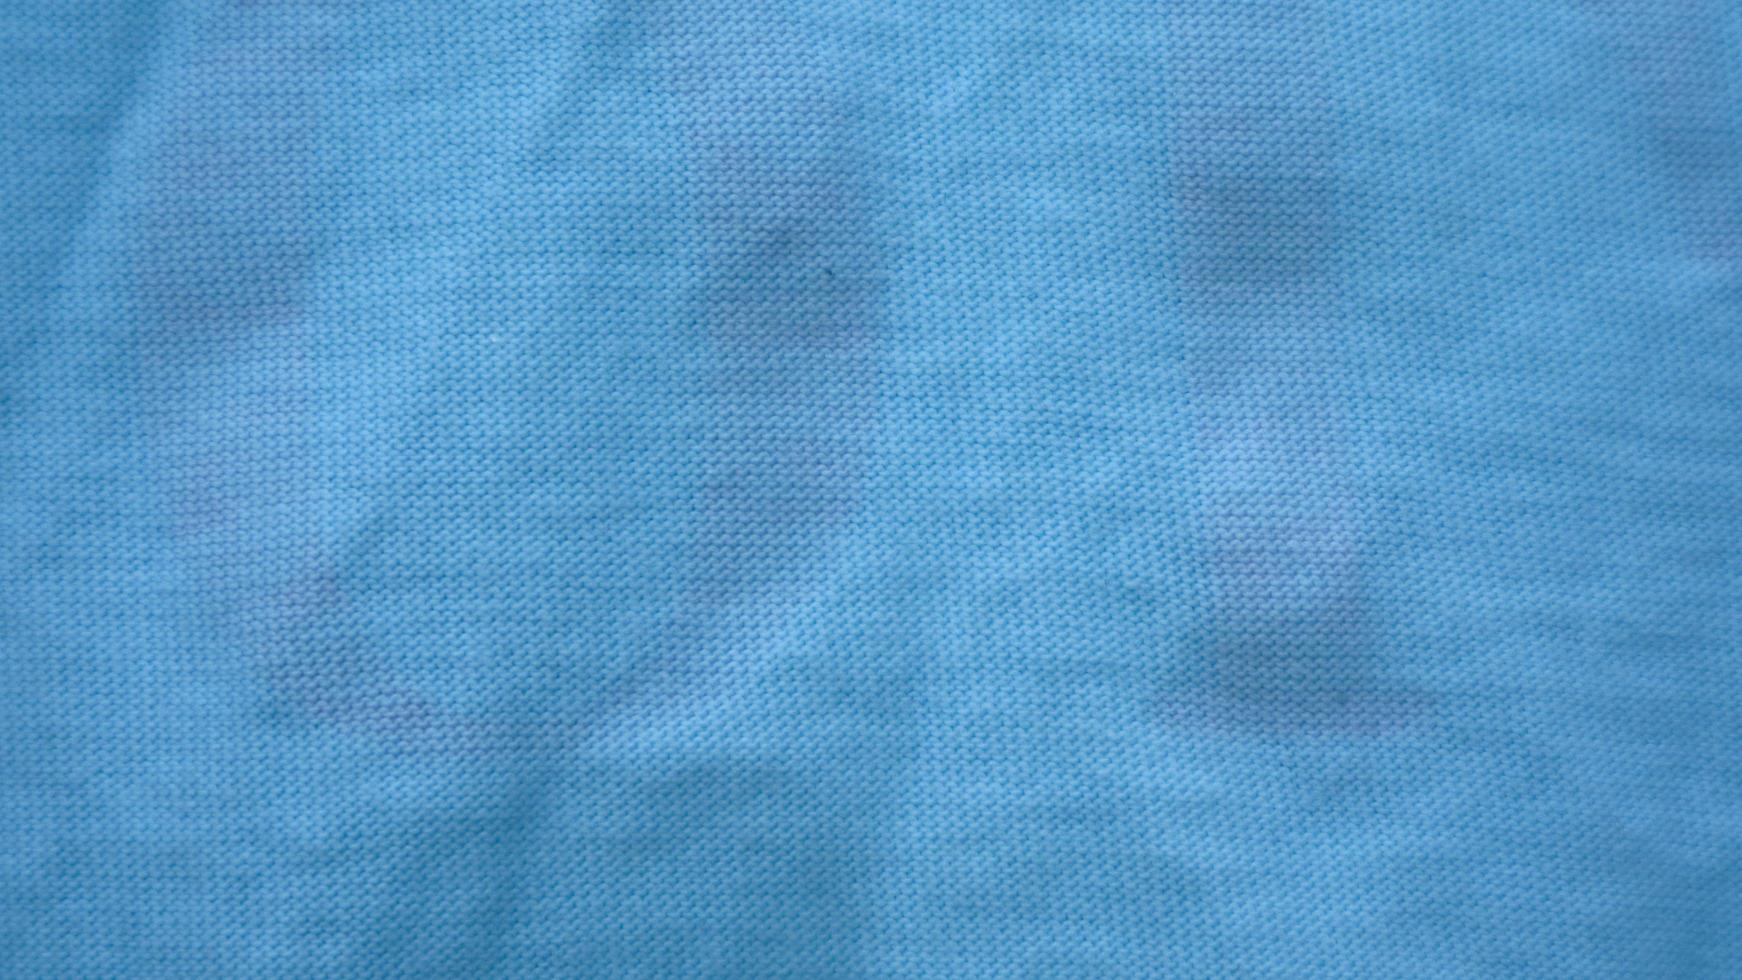 textura de tela azul claro como fondo foto